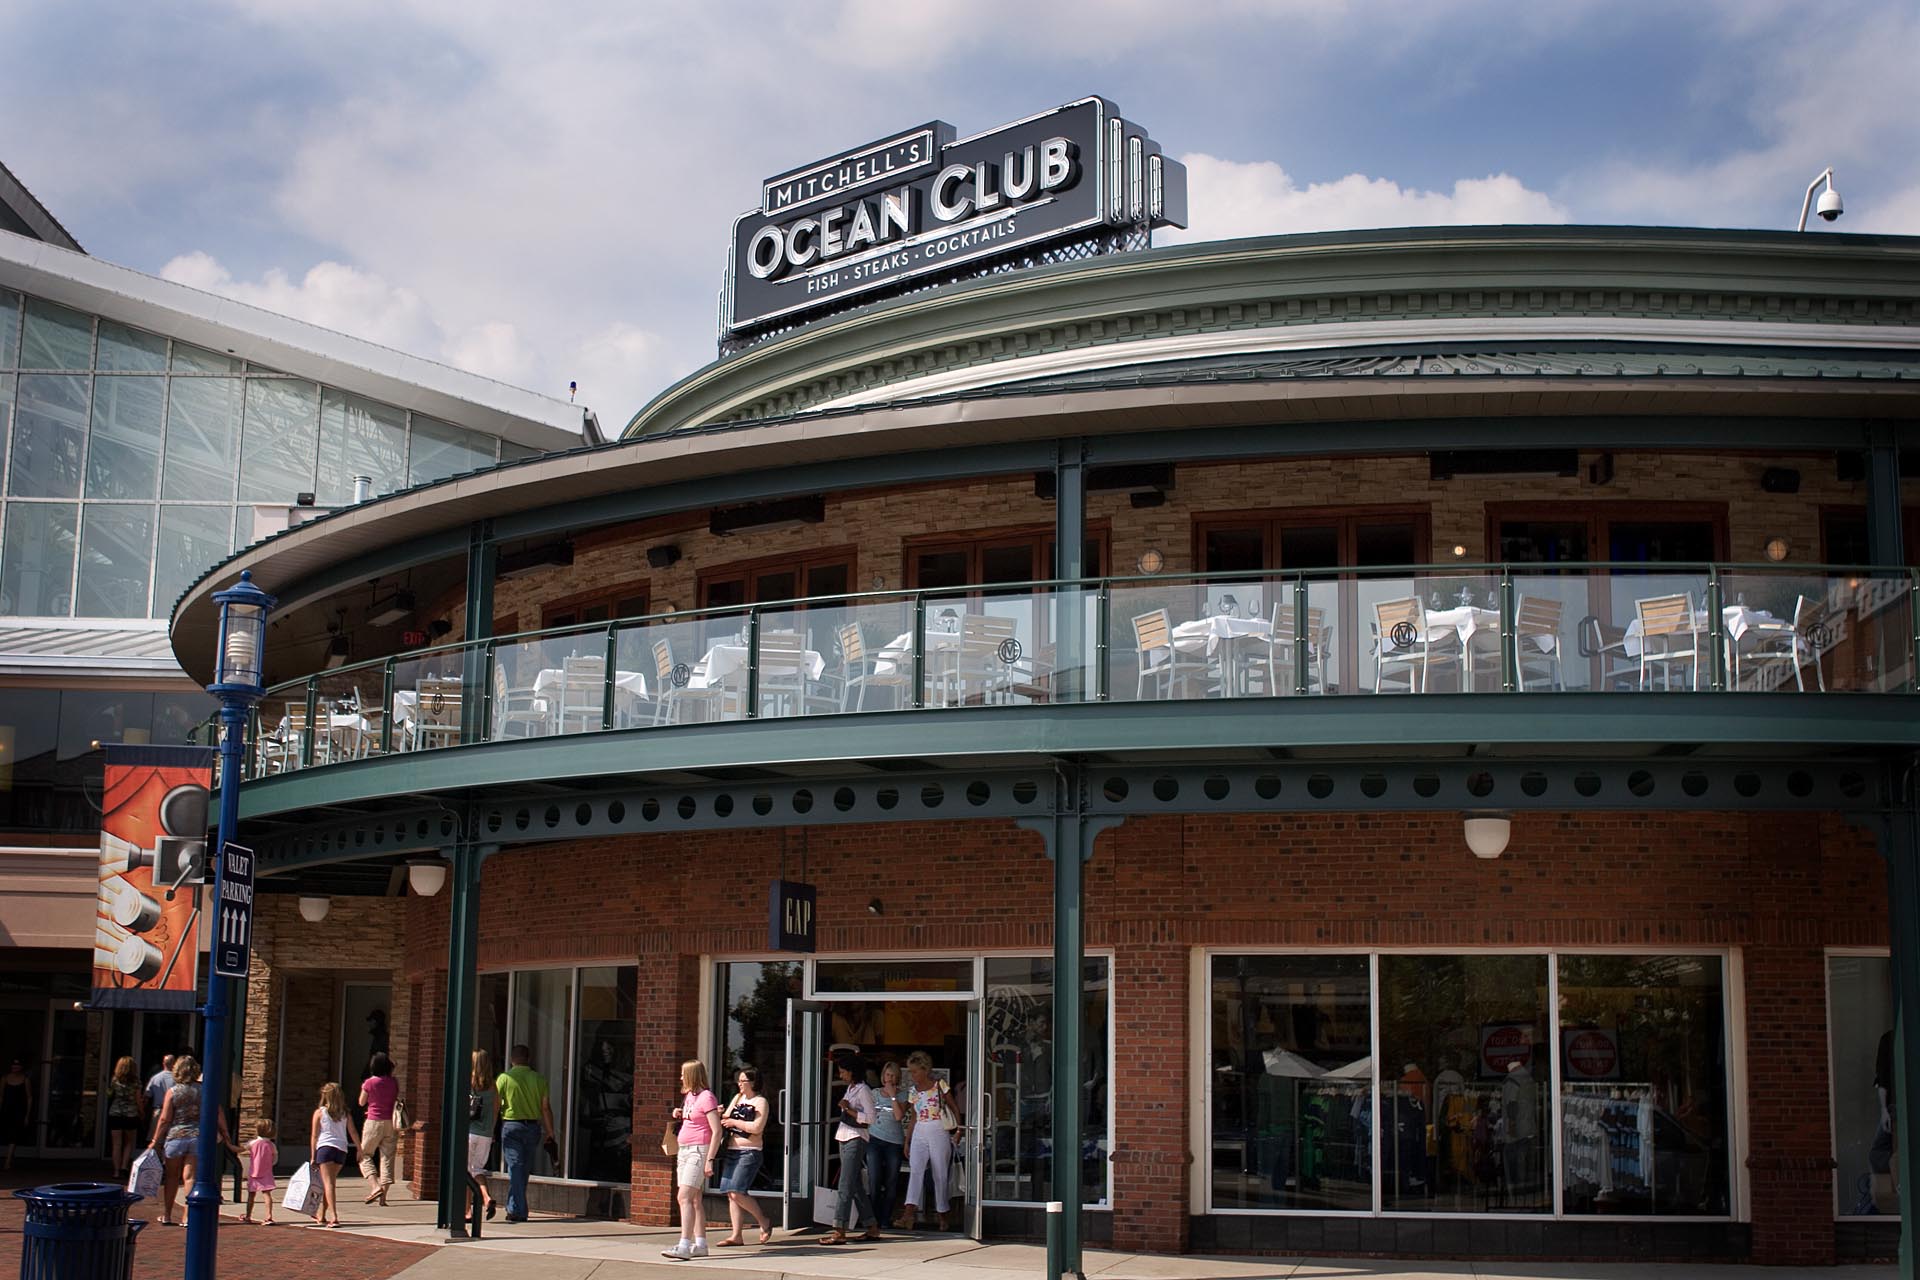 Mitchell's ocean club in Columbus Ohio